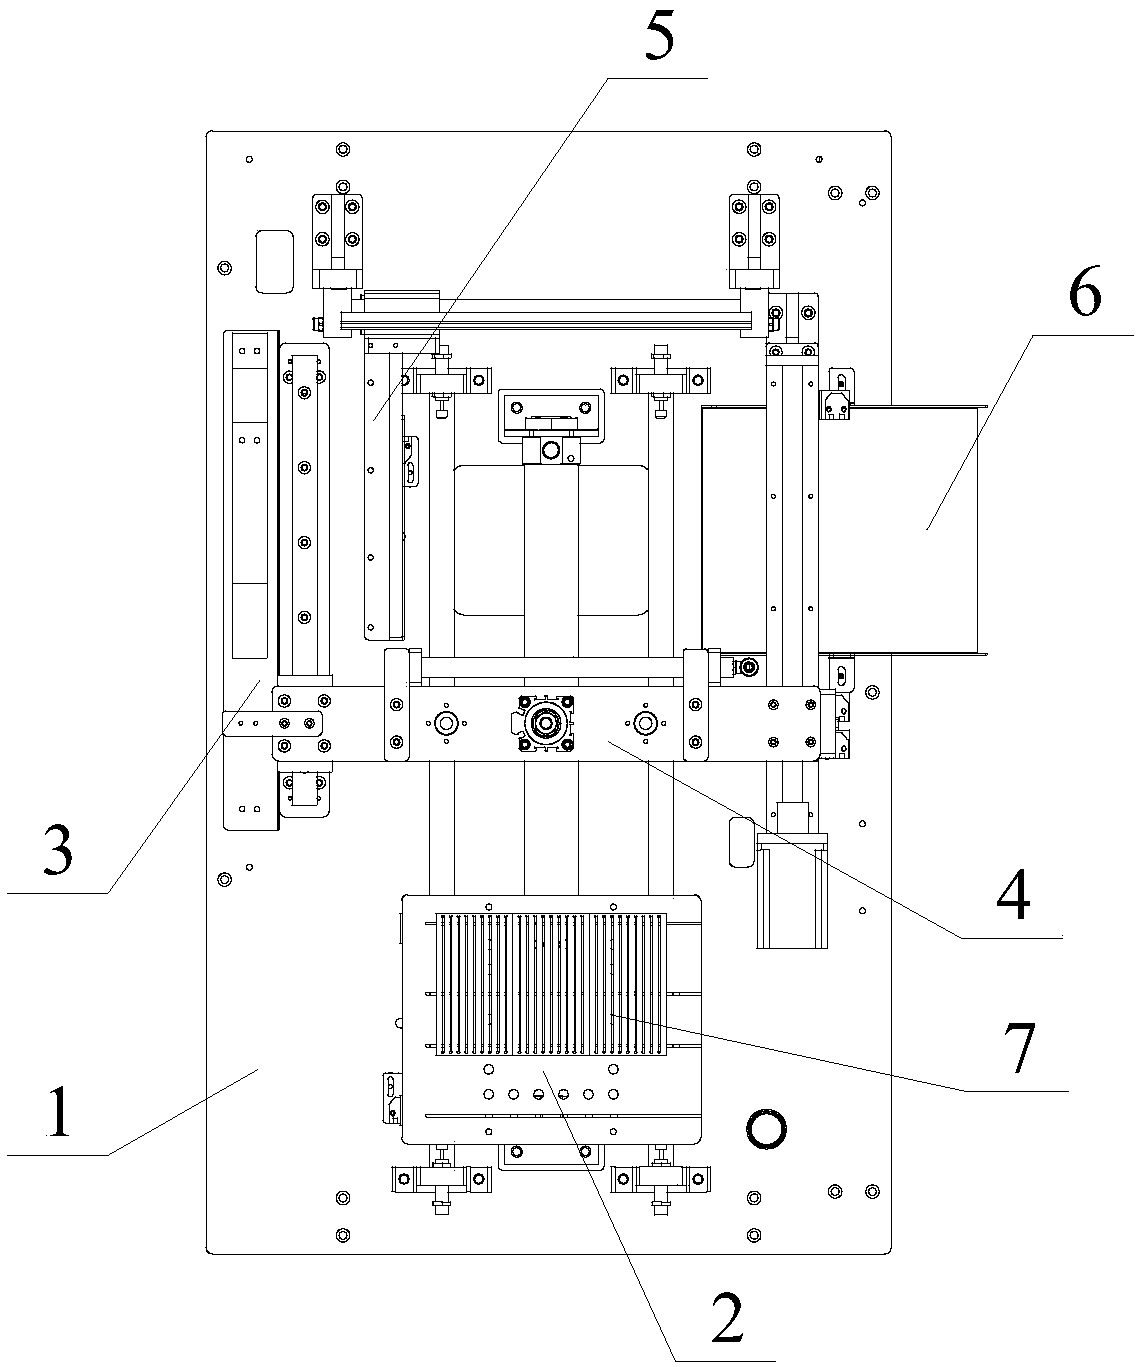 A PCB automatic derusting machine